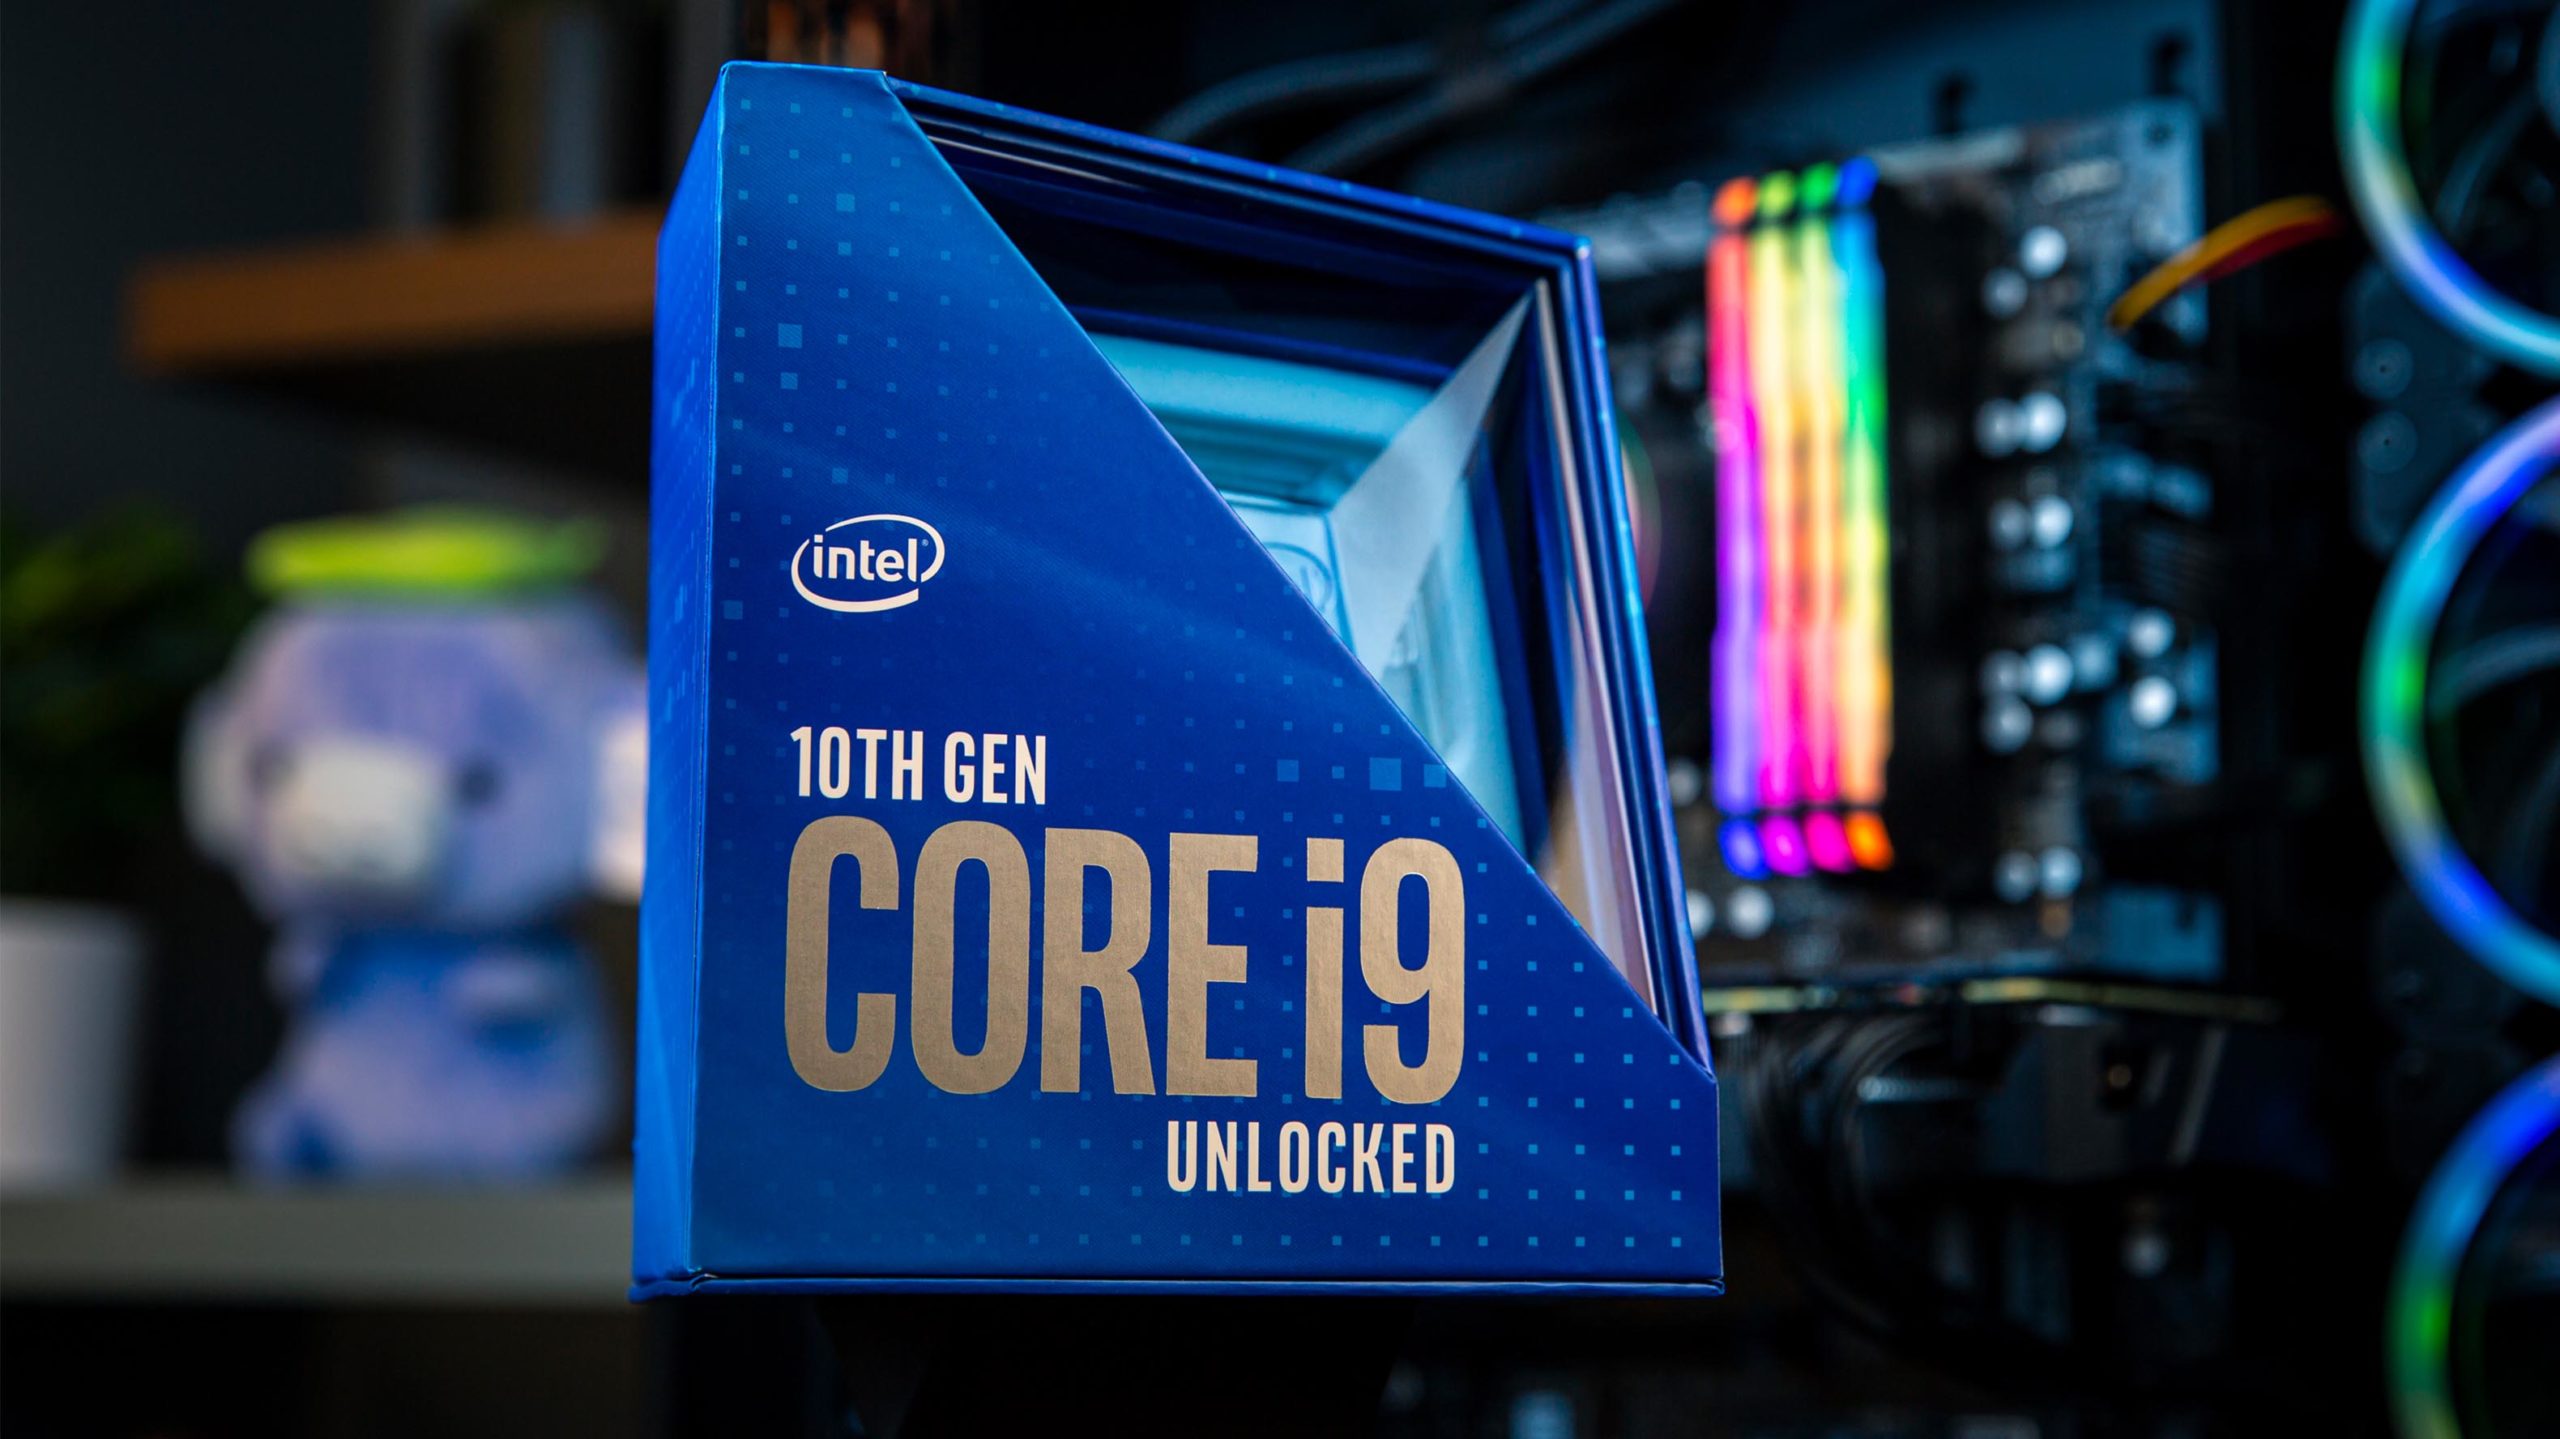 Intel 10th Gen Core i9